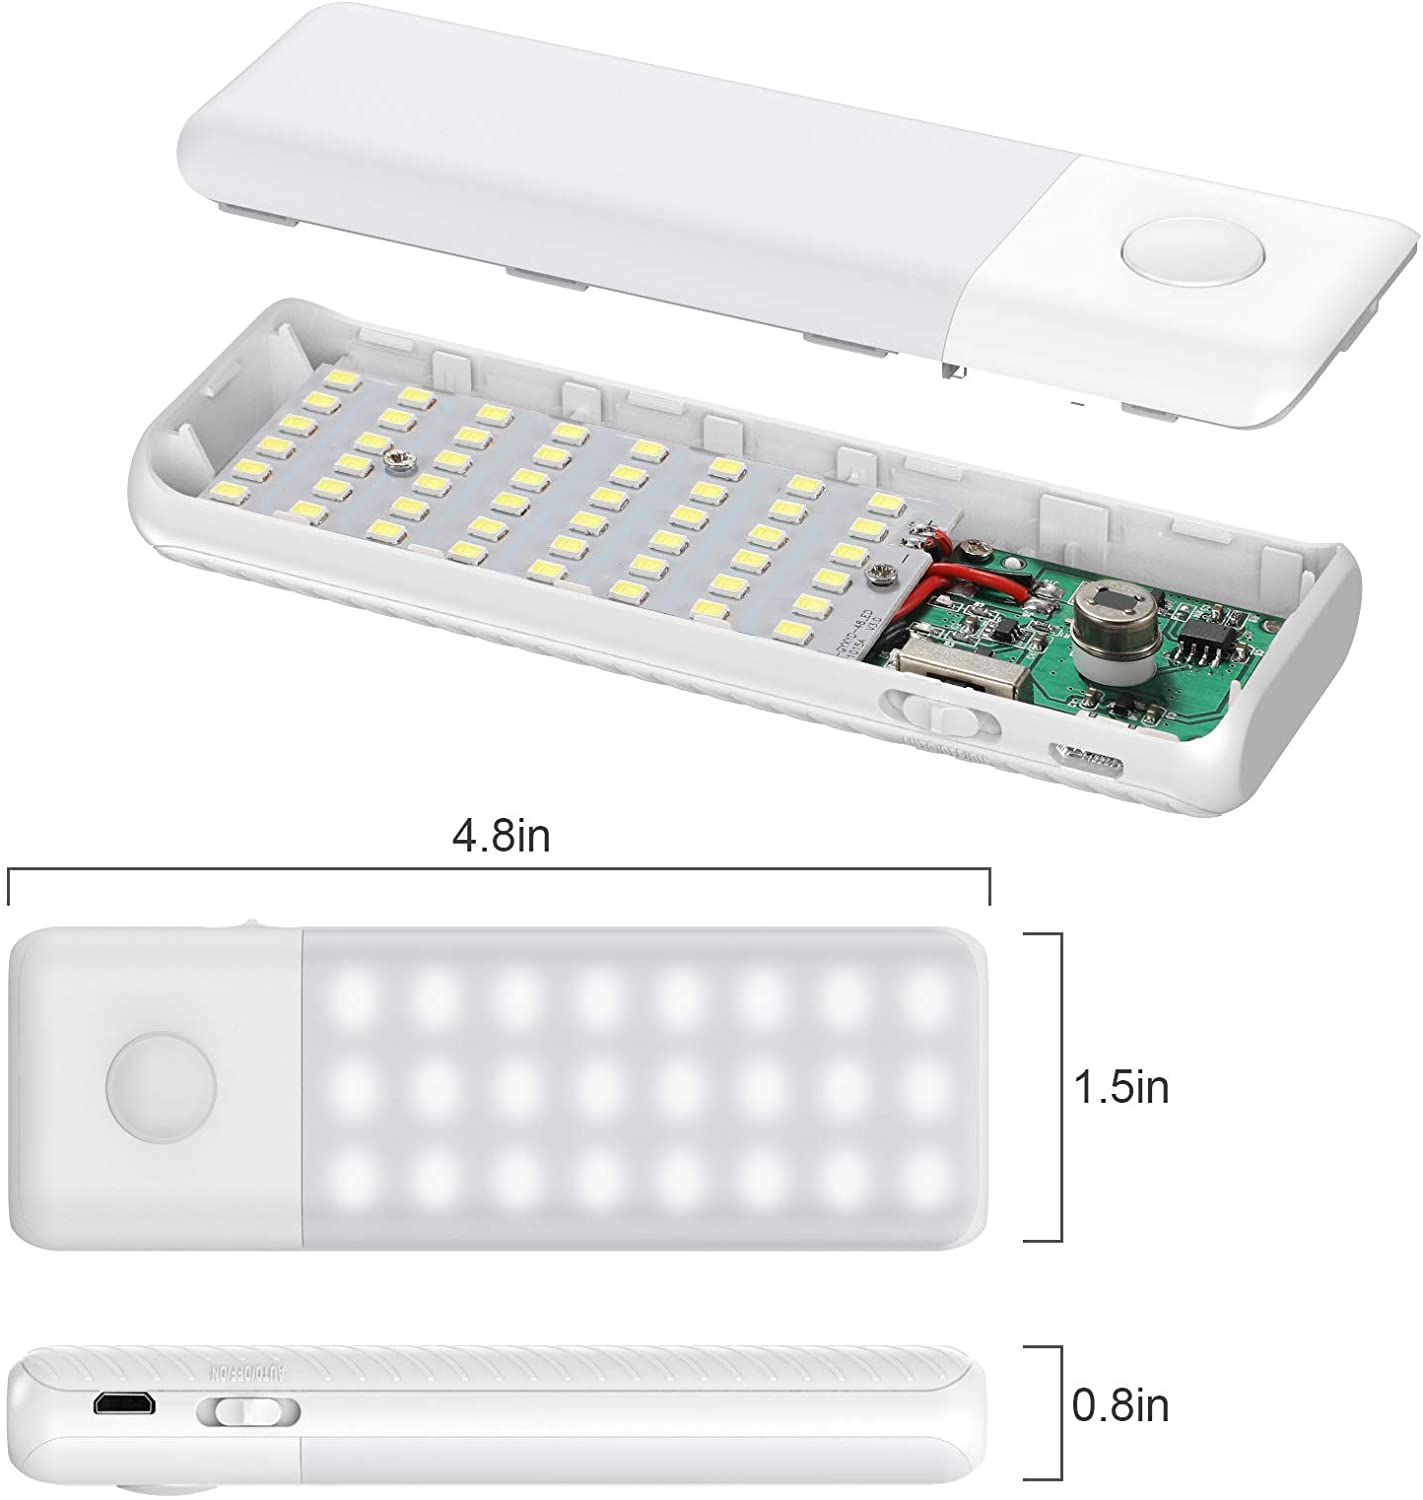 LED con Sensore di Movimento (Per Sgabuzzini, Armadi, Corridoi, Cucina)